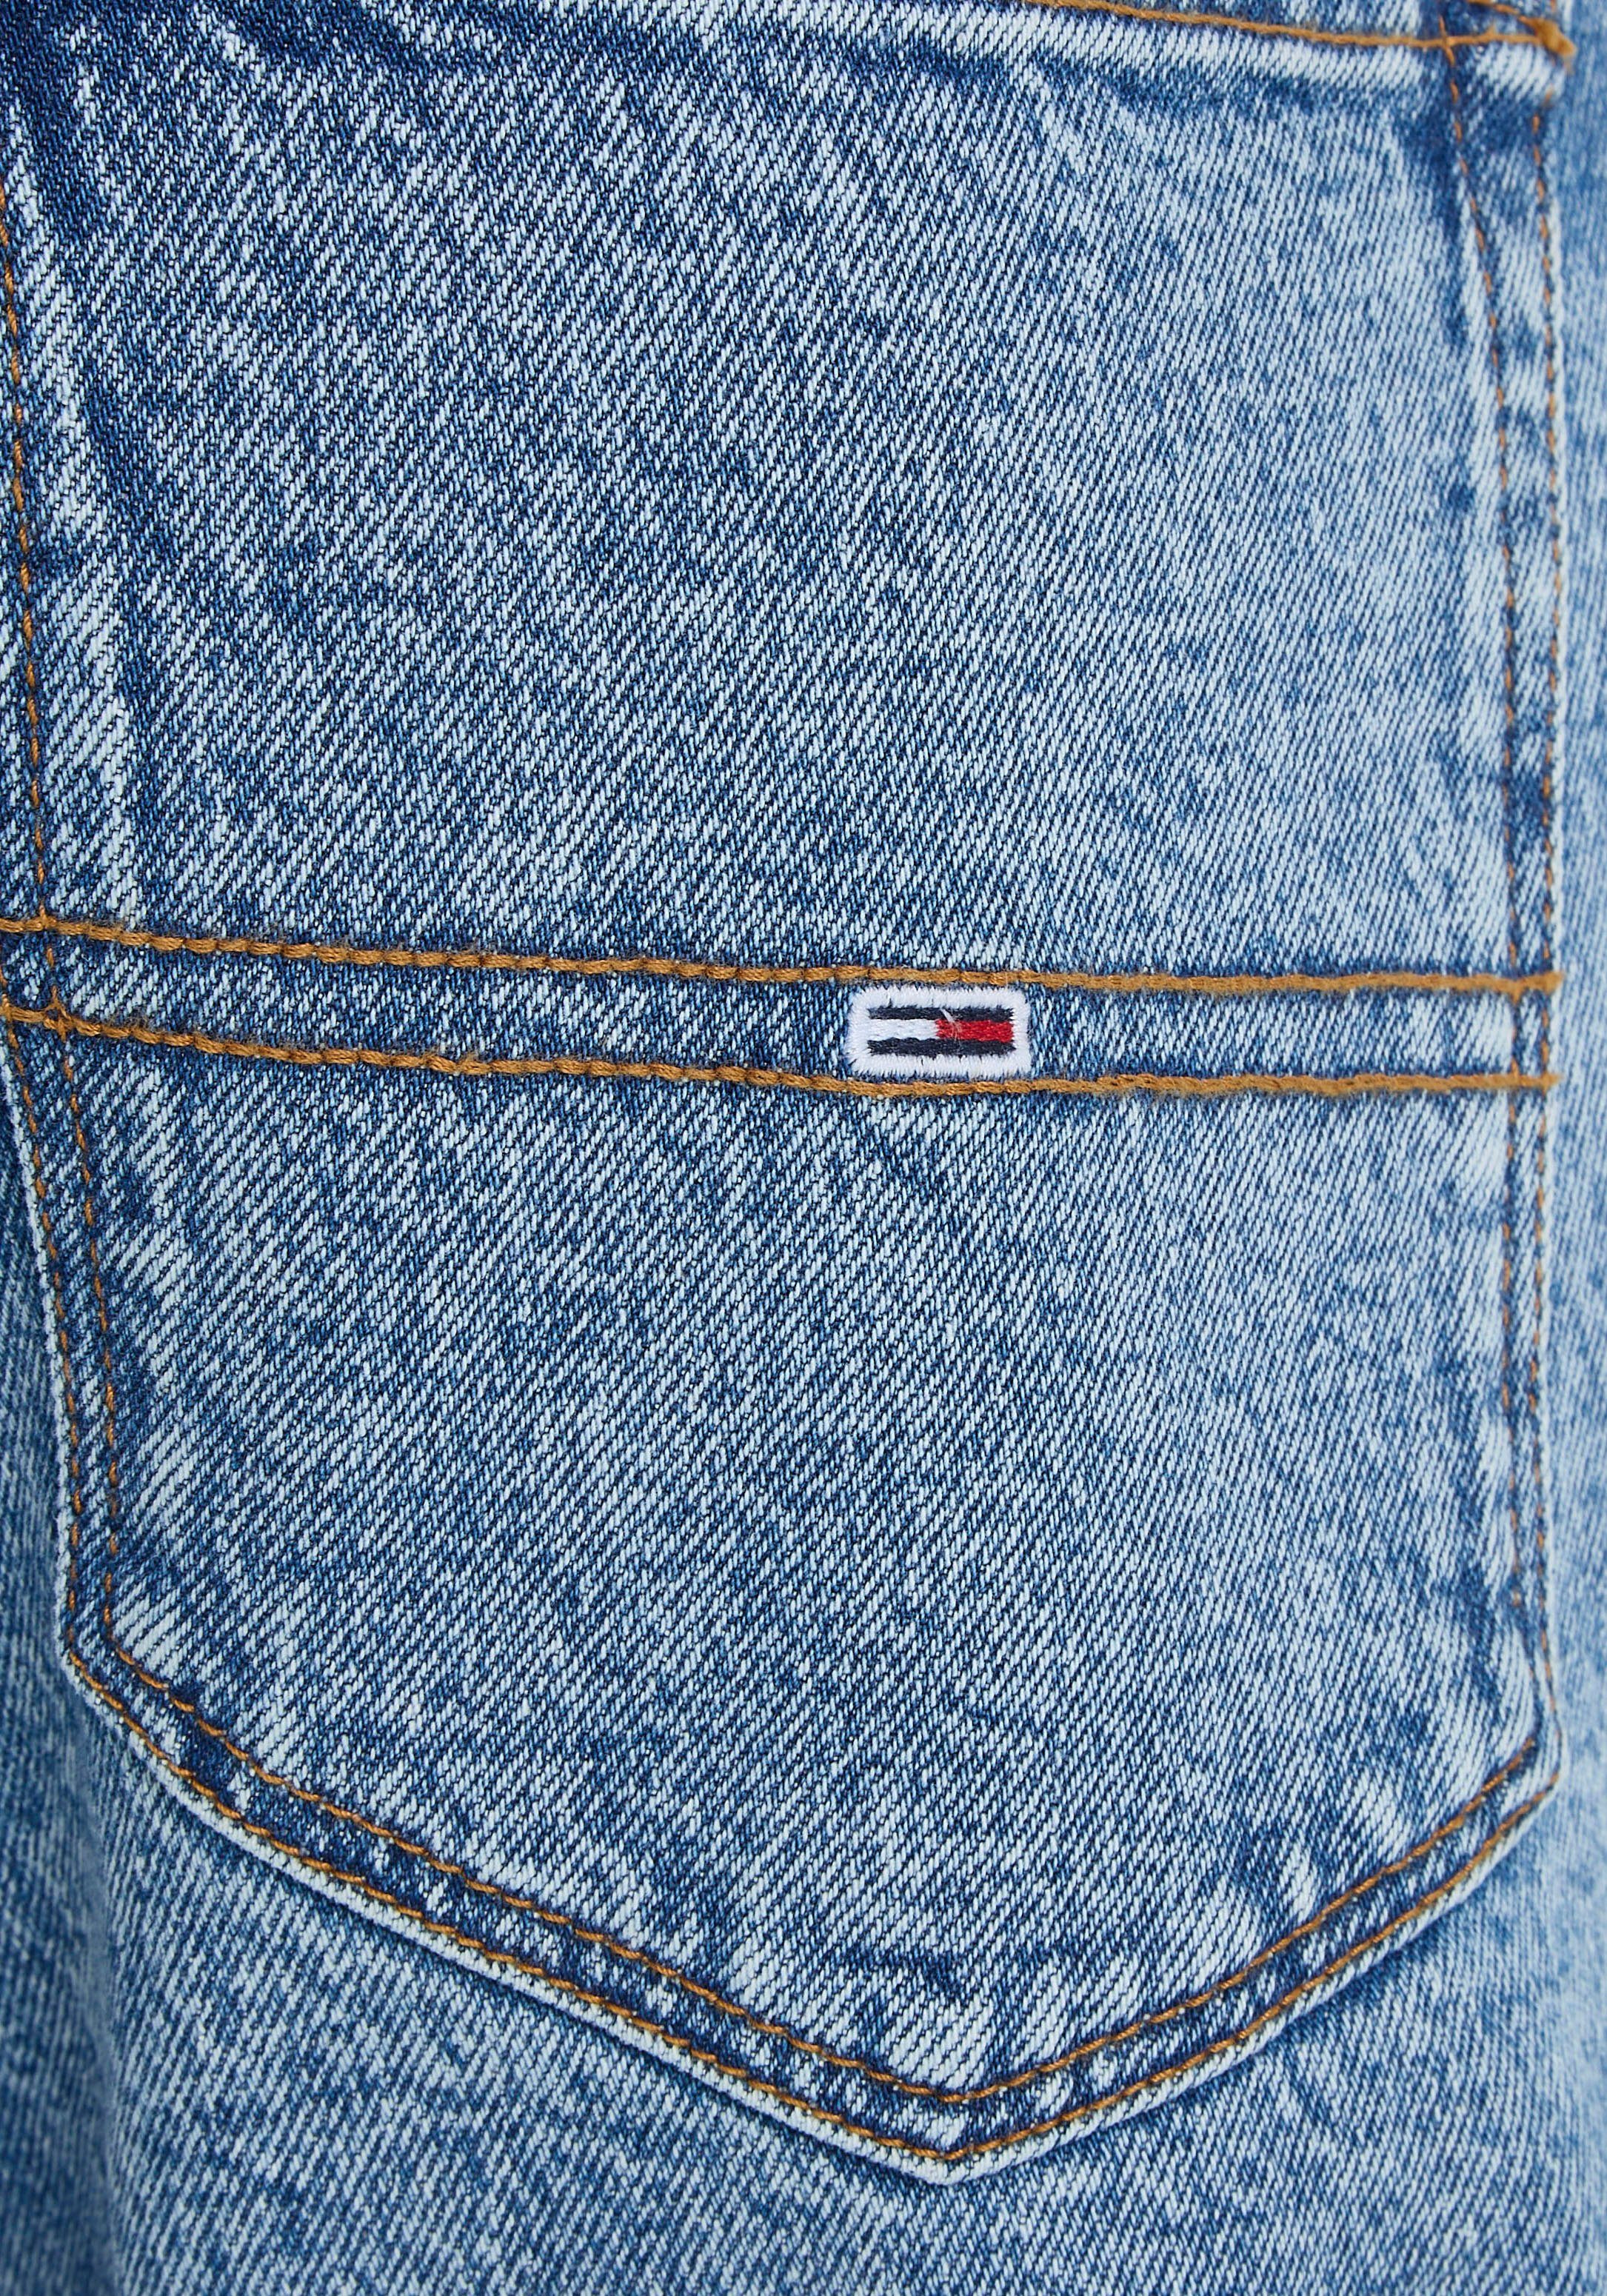 Denim Jeans SCANTON 5-Pocket-Jeans SLIM Tommy med. Y